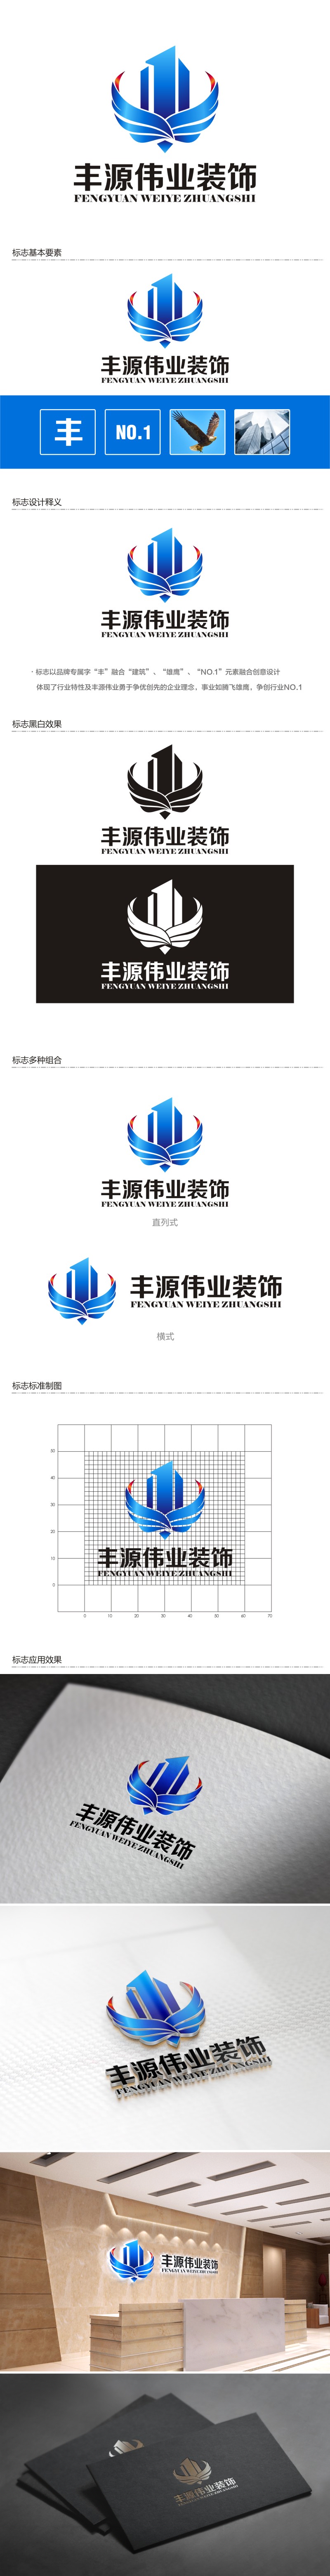 陈国伟的北京丰源伟业建筑装饰工程有限公司logo设计